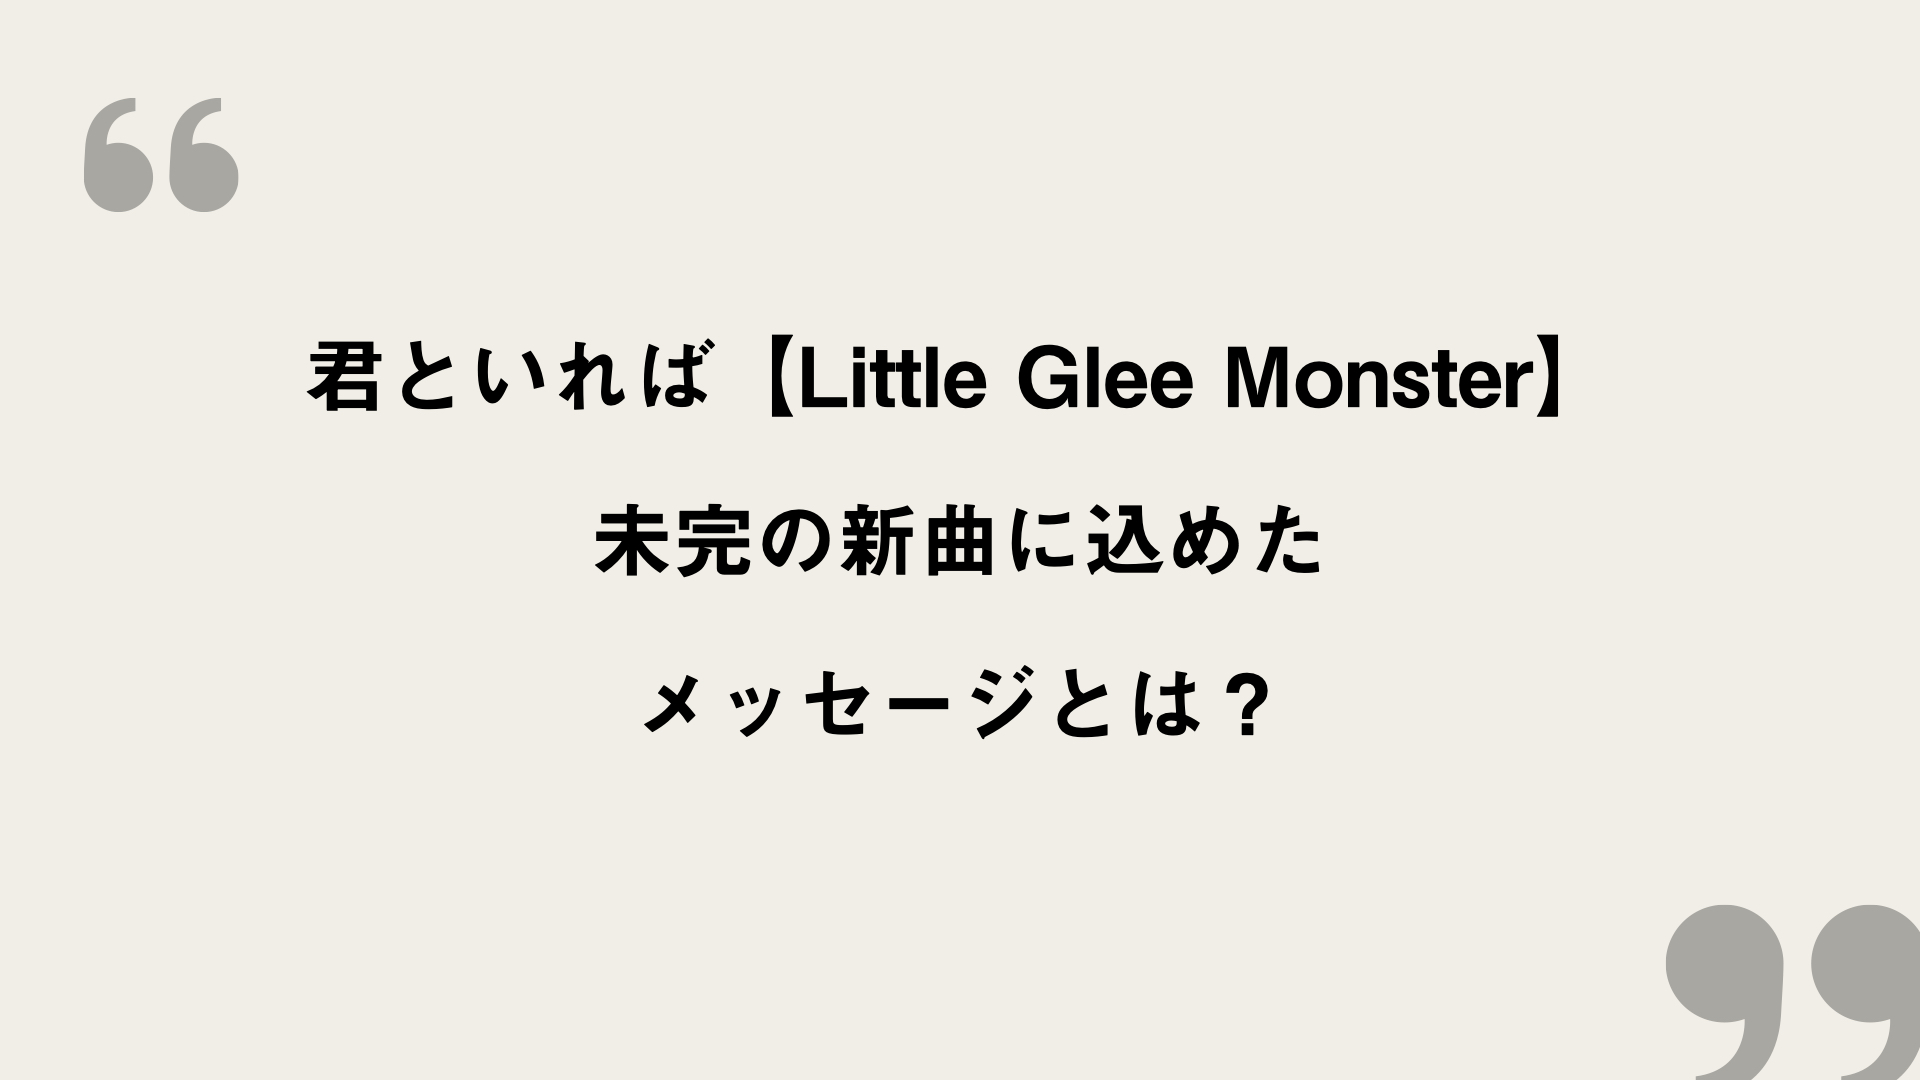 君といれば Little Glee Monster 歌詞の意味を考察 未完の新曲に込めたメッセージとは Framu Media